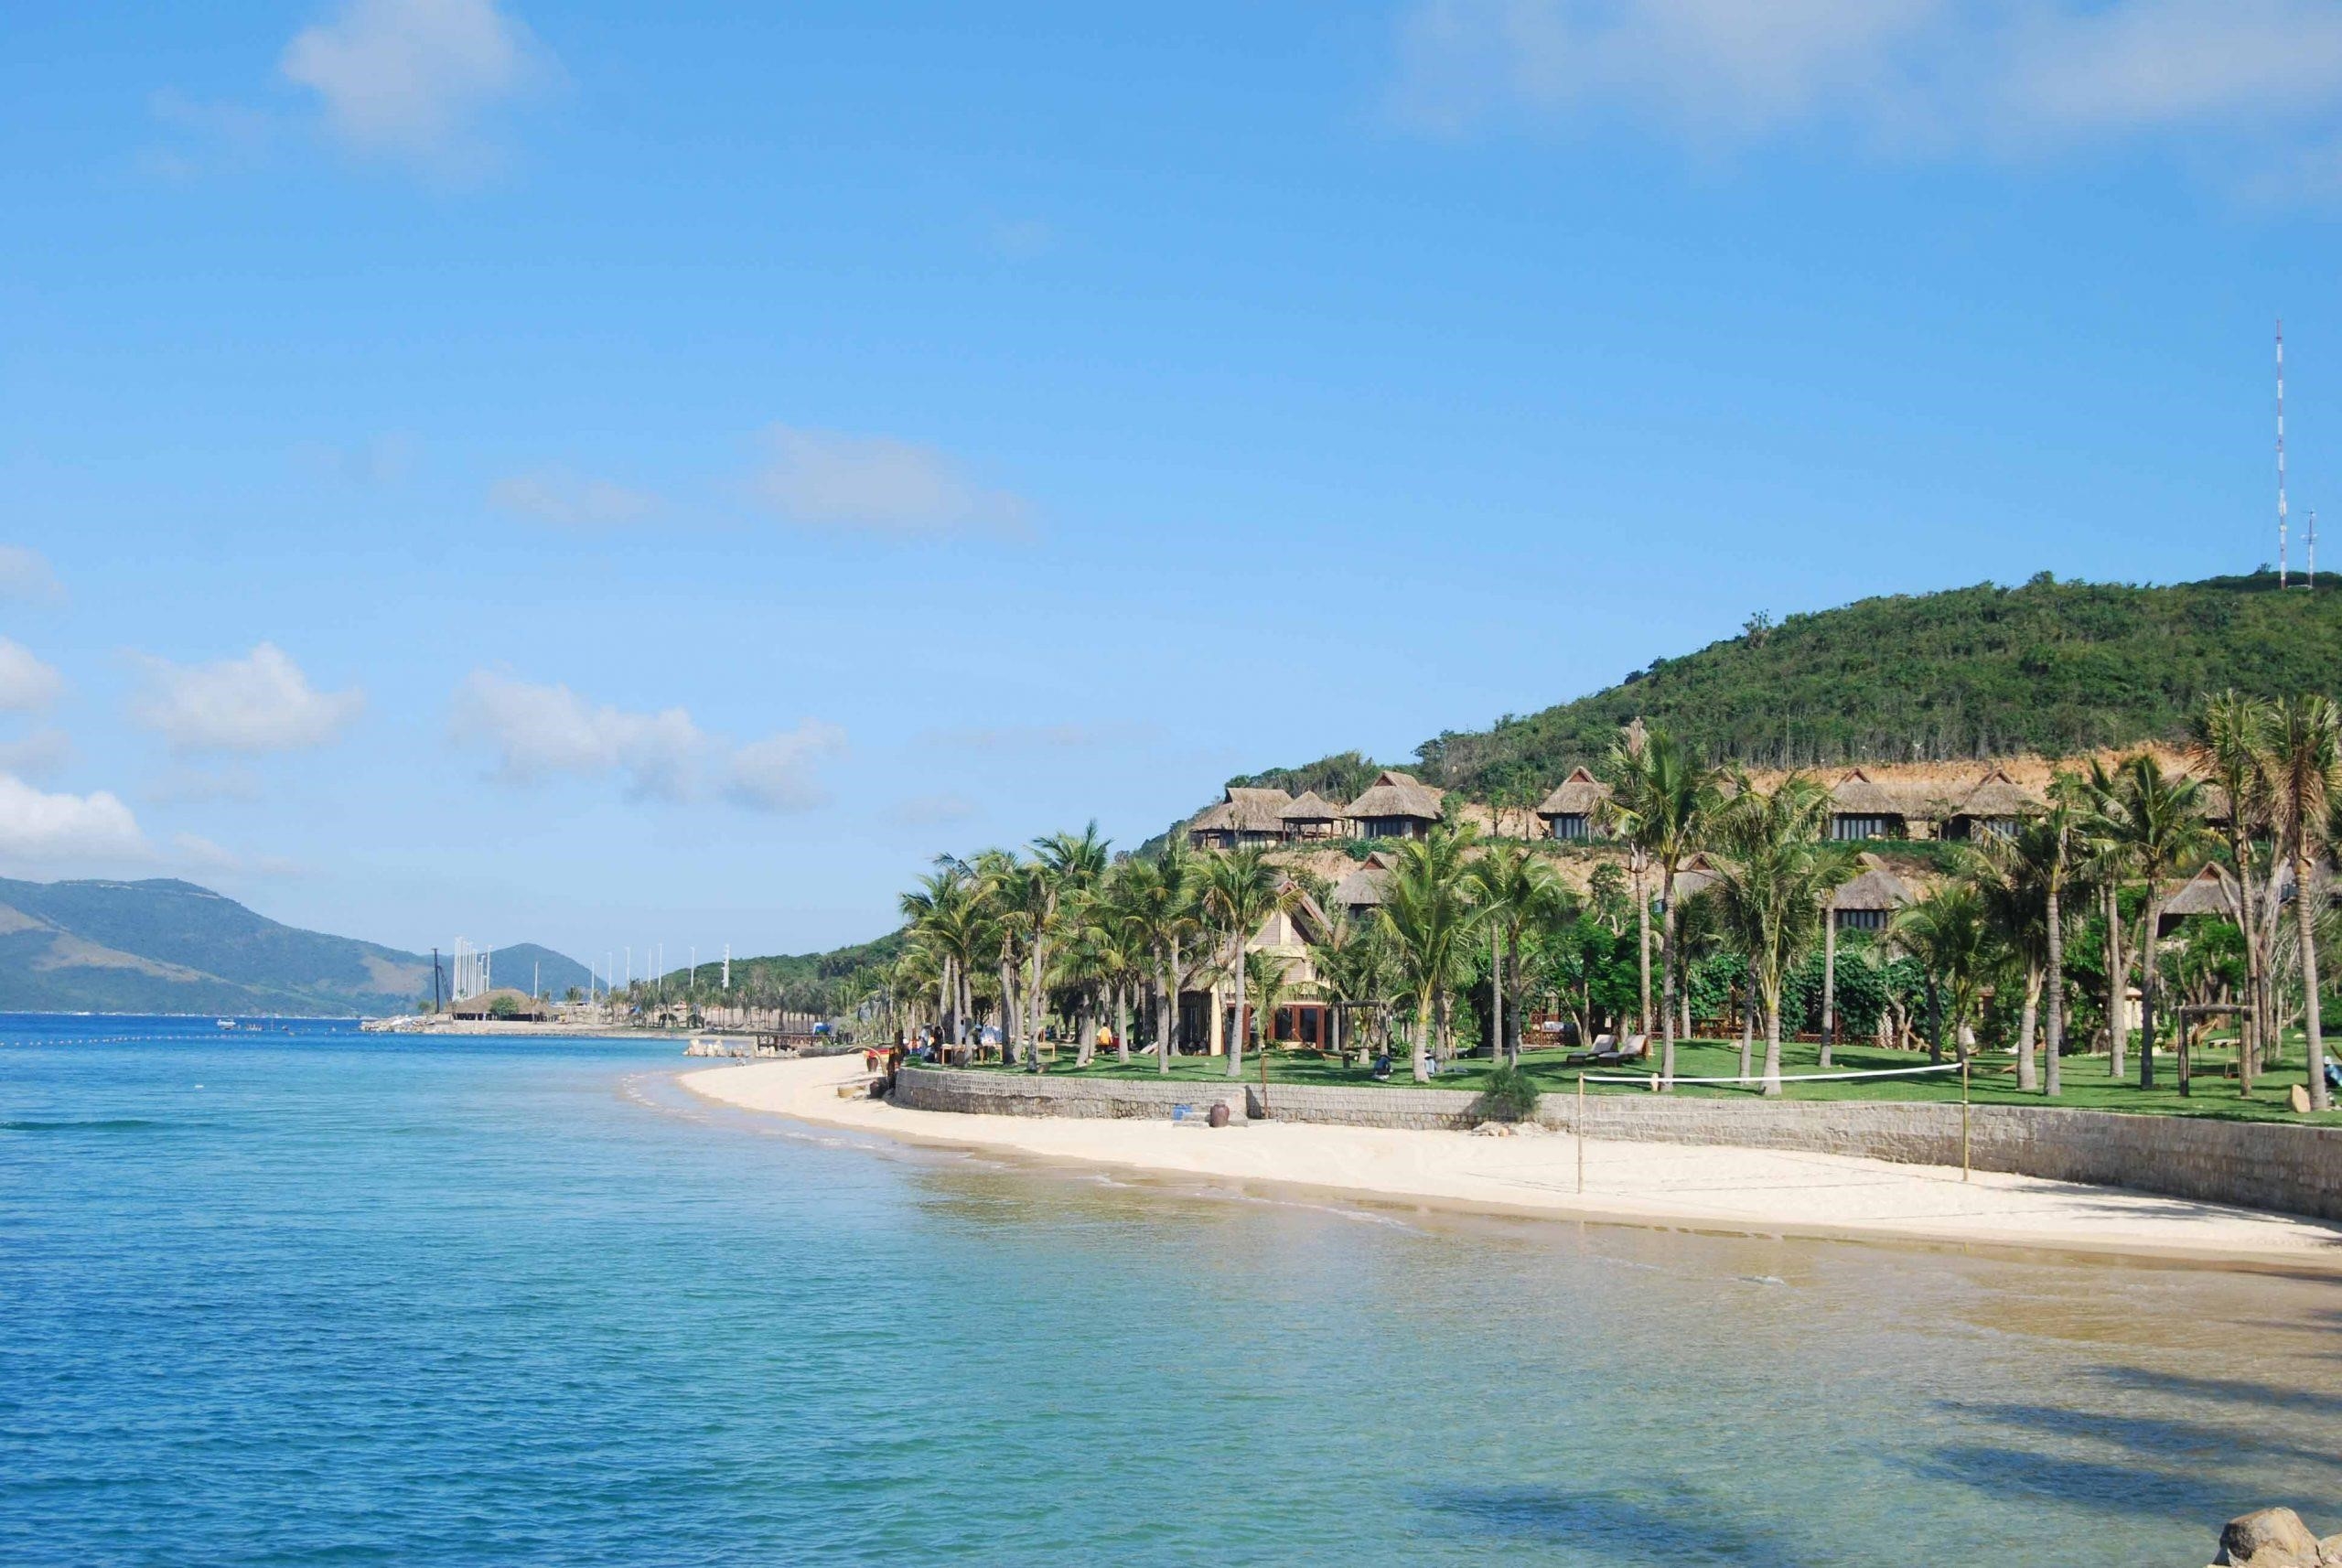 Hòn Tằm là một đảo nhỏ nằm ở vịnh Nha Trang, với bãi biển trải dài và nước biển trong xanh tuyệt đẹp. Đây là một địa điểm lý tưởng để thư giãn và tận hưởng không gian thiên nhiên tuyệt vời.